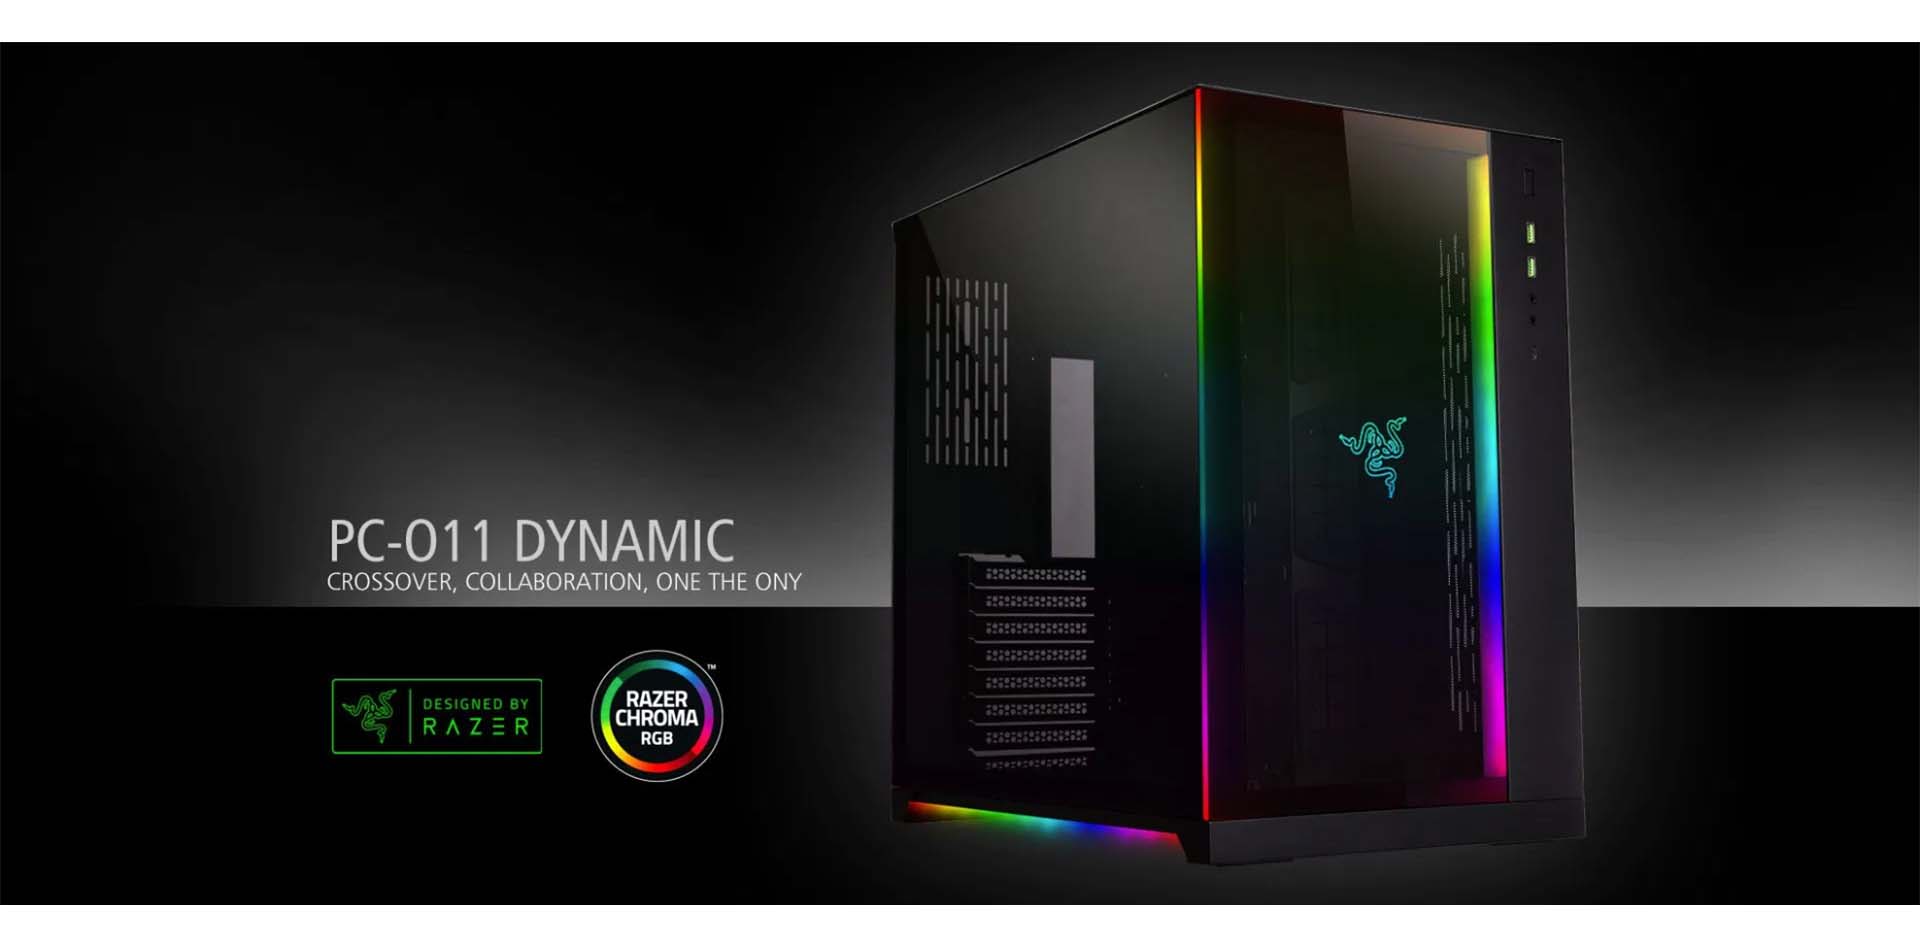 PC O11 Dynamic Razer Edition